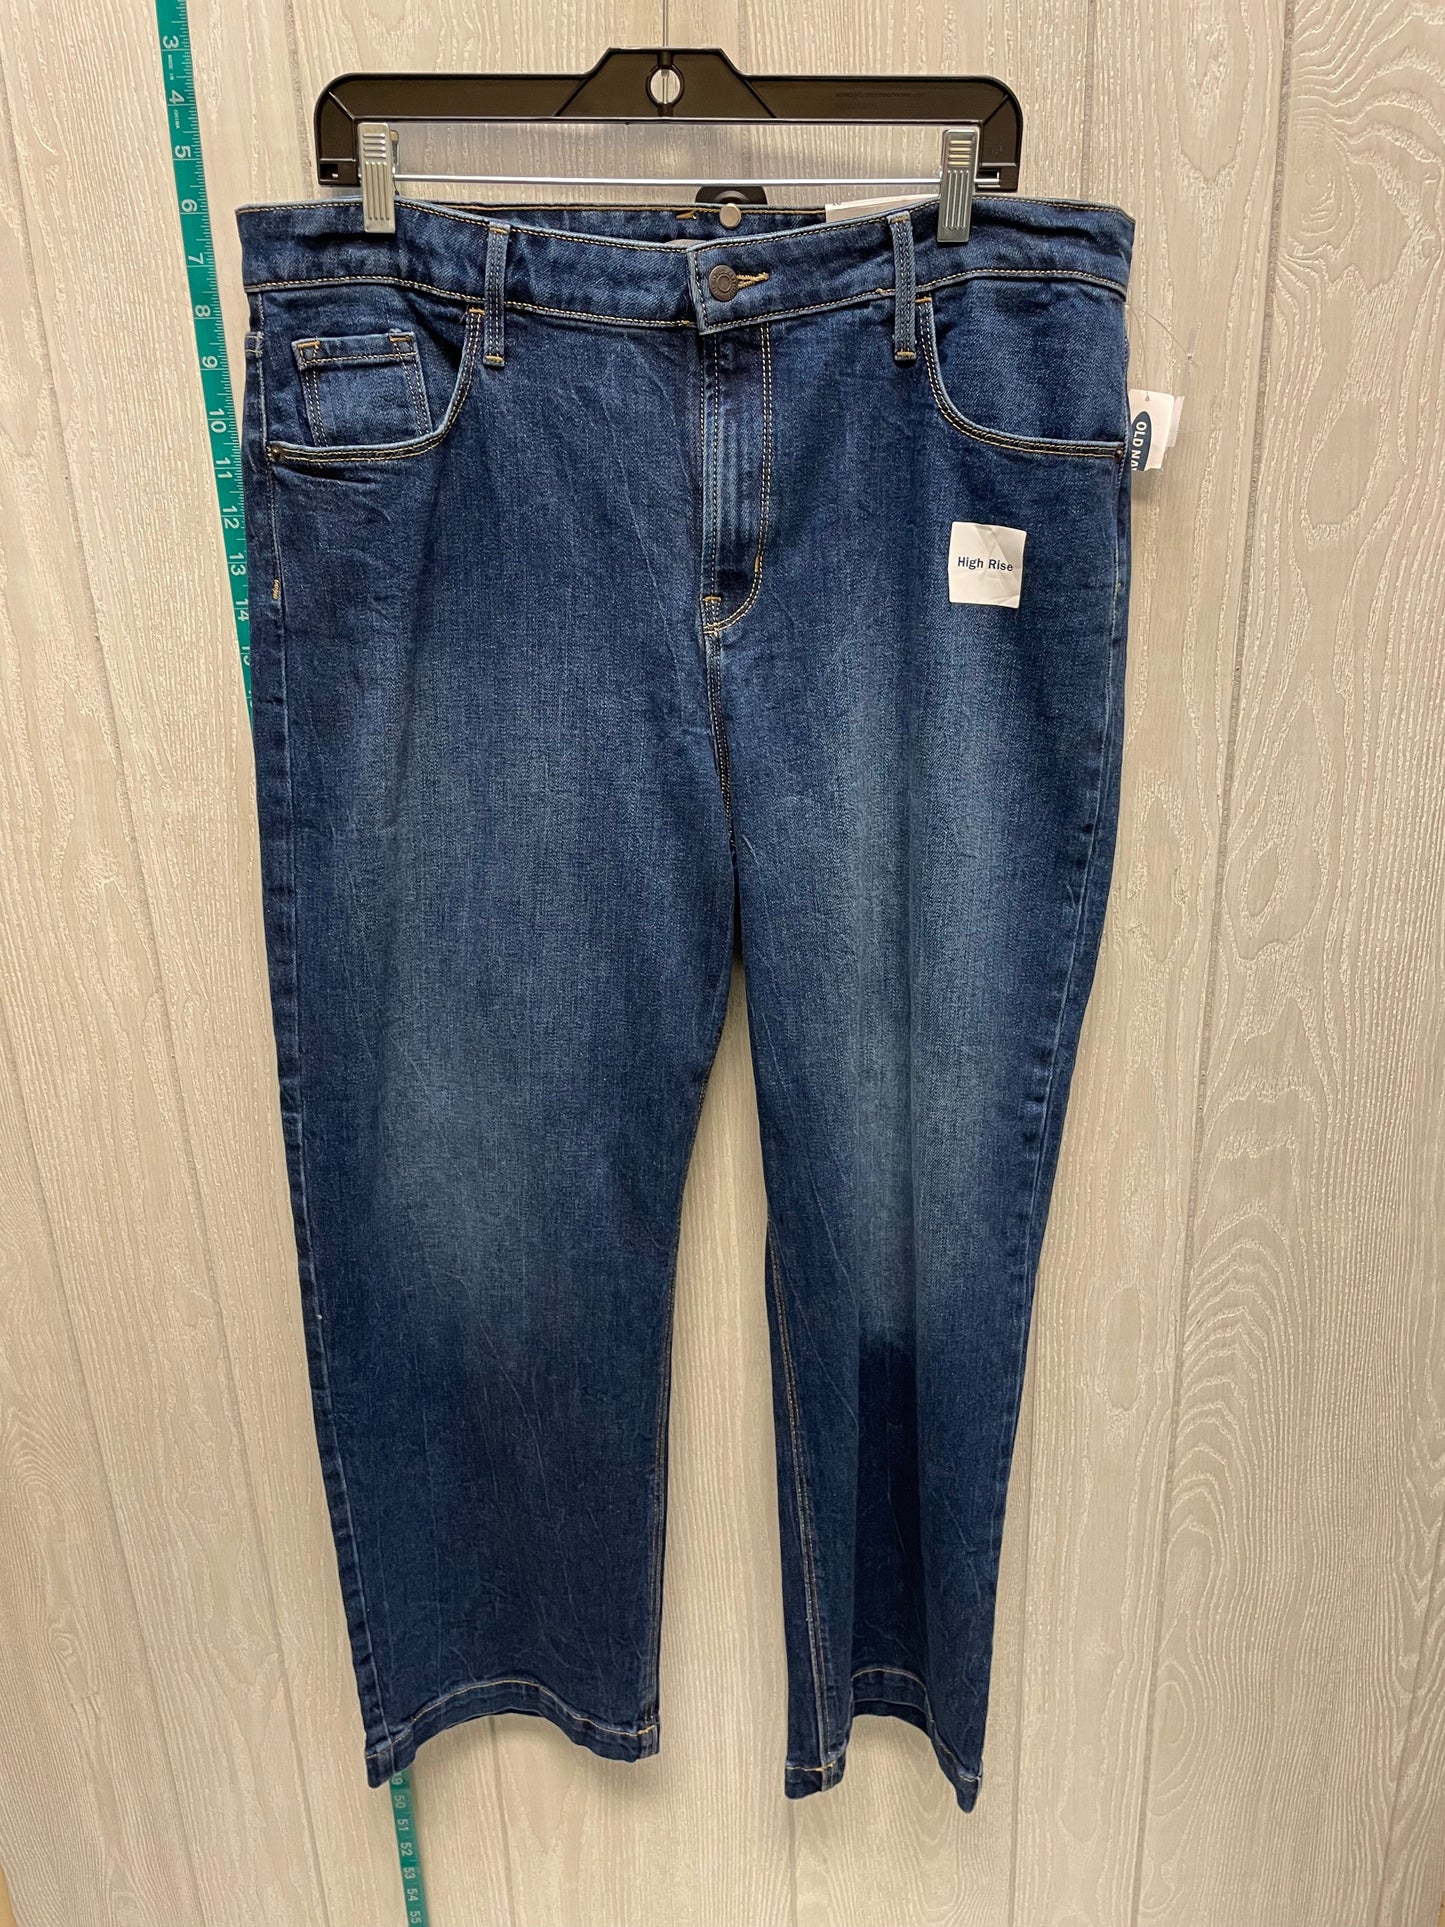 Blue Denim Jeans Boyfriend Old Navy, Size 16